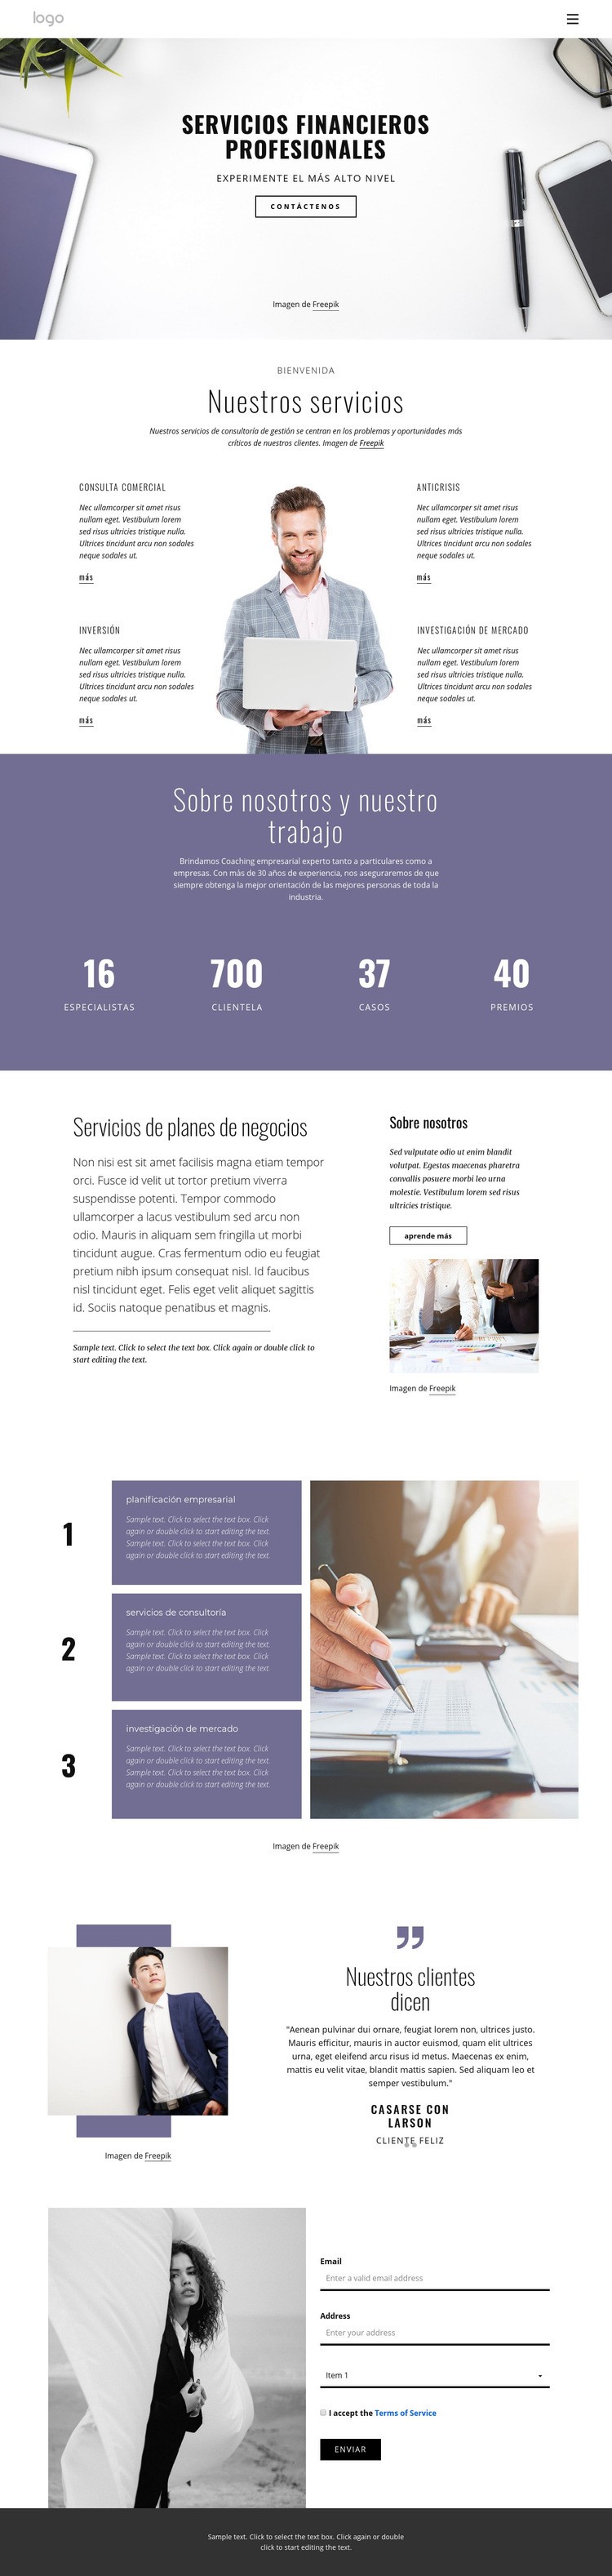 Servicios financieros profesionales Diseño de páginas web